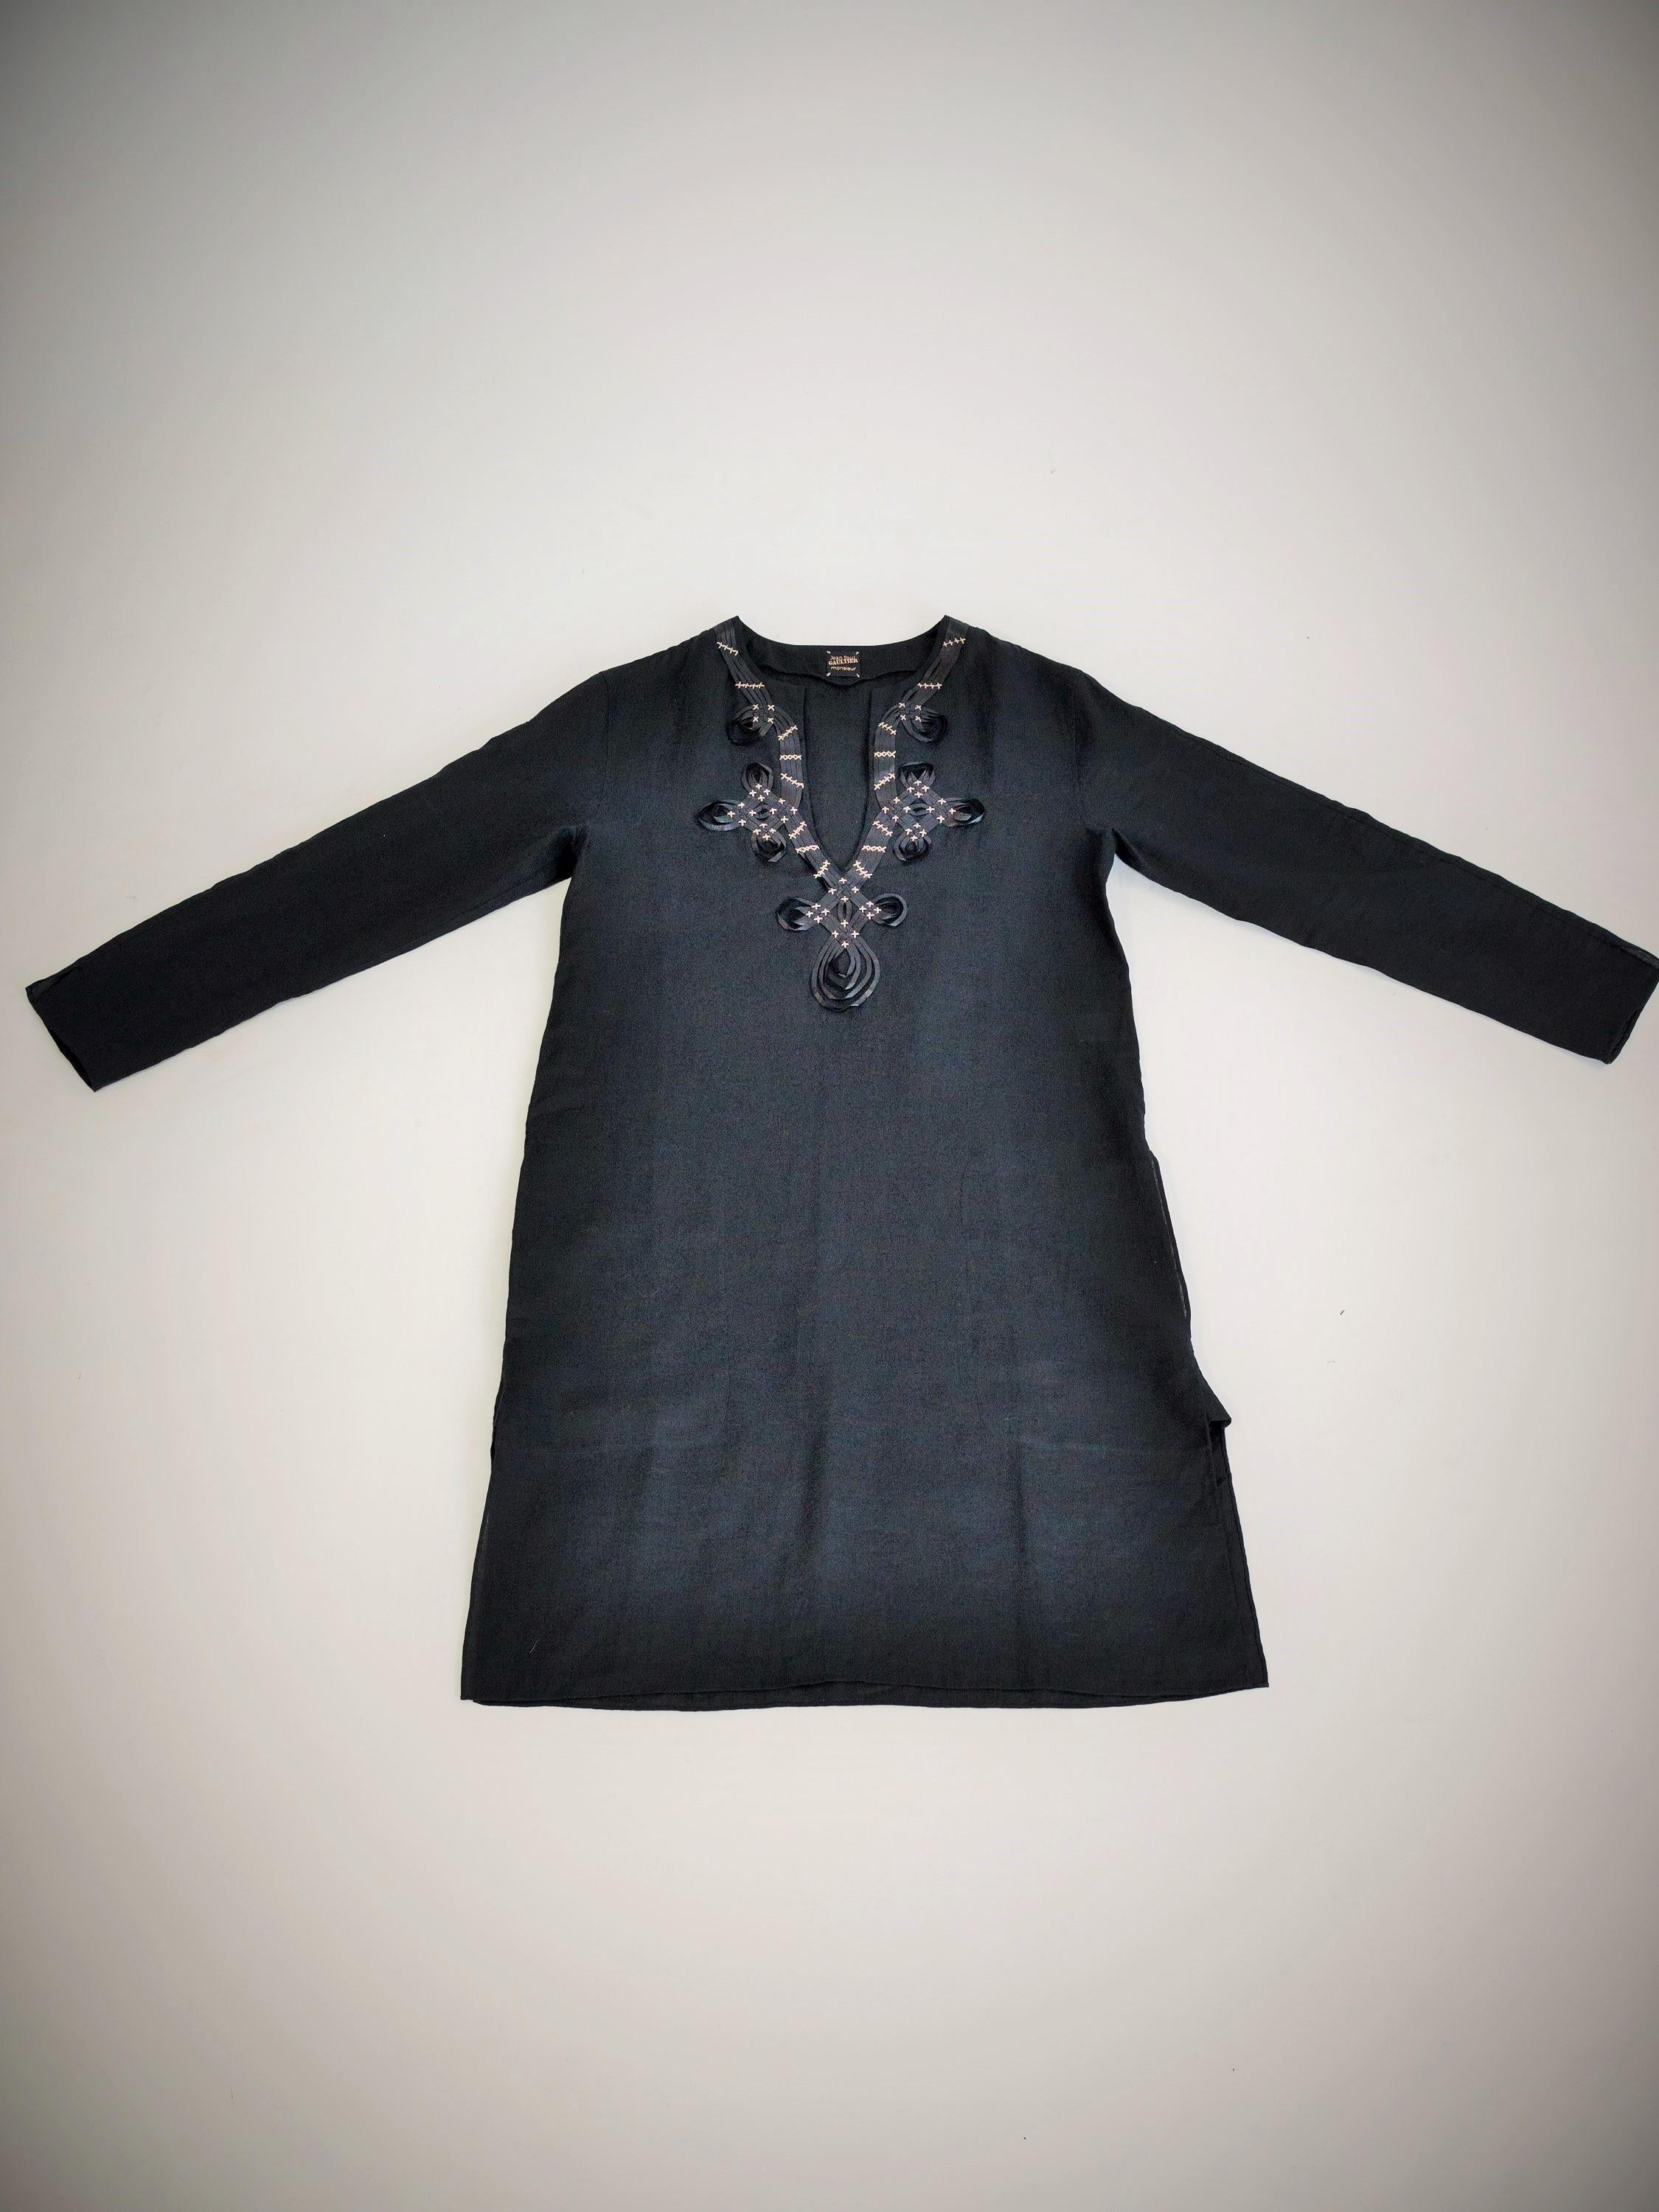 Circa 2000

France

Belle blouse orientaliste en lin noir brodé par Jean-Paul Gaultier Monsieur datant des années 2000. Inspiration libre ou clin d'œil du créateur à la coupe d'une Djellaba ou à la longueur d'un Kurta indien. Chemisier à col ras du